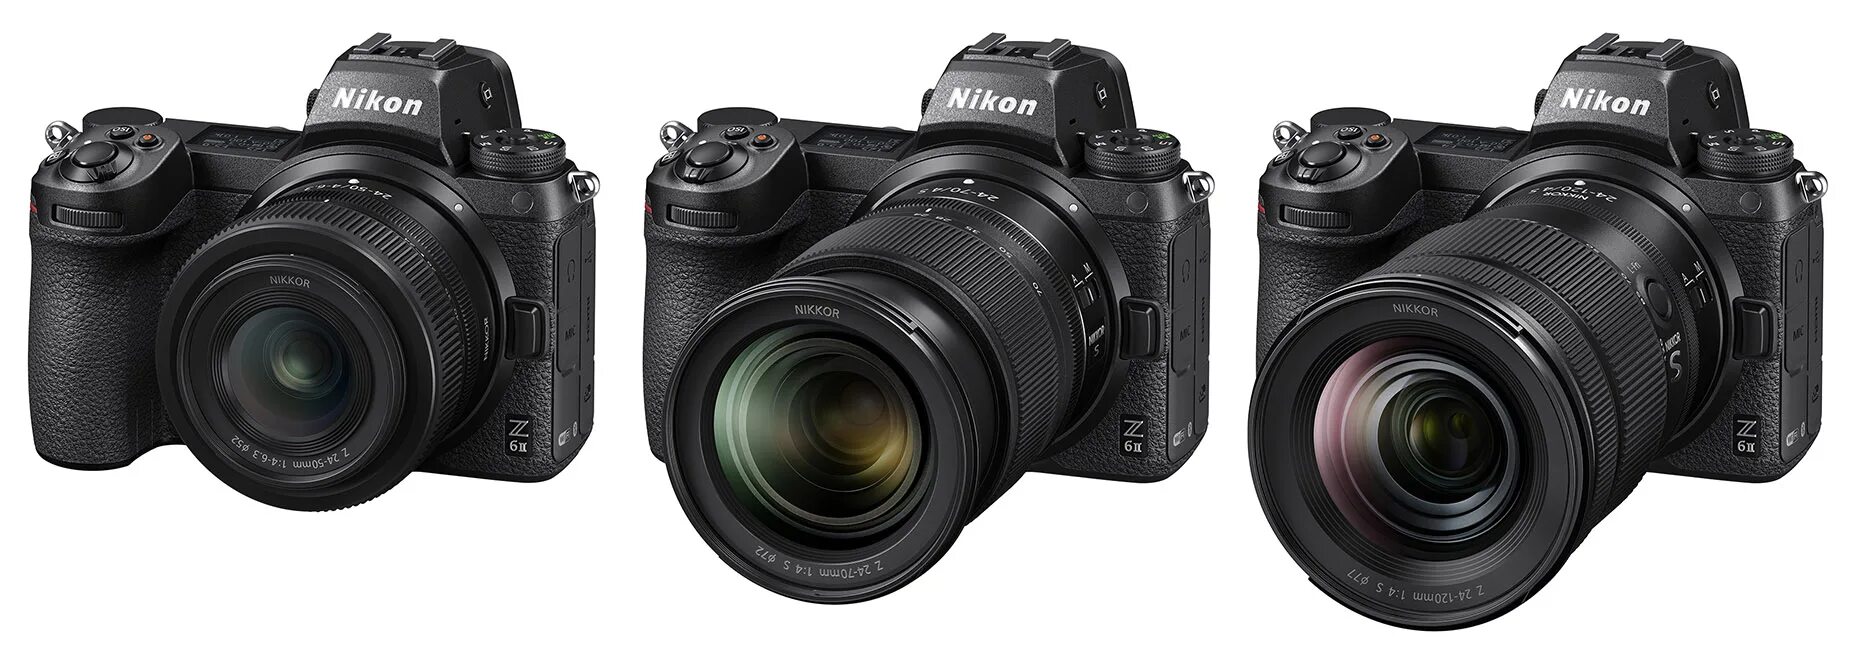 Nikon 24-120 f4. Nikon 24-120mm f/4s. Nikon Nikkor z 24-120mm f/4 s. Nikon z 24-120 f4.